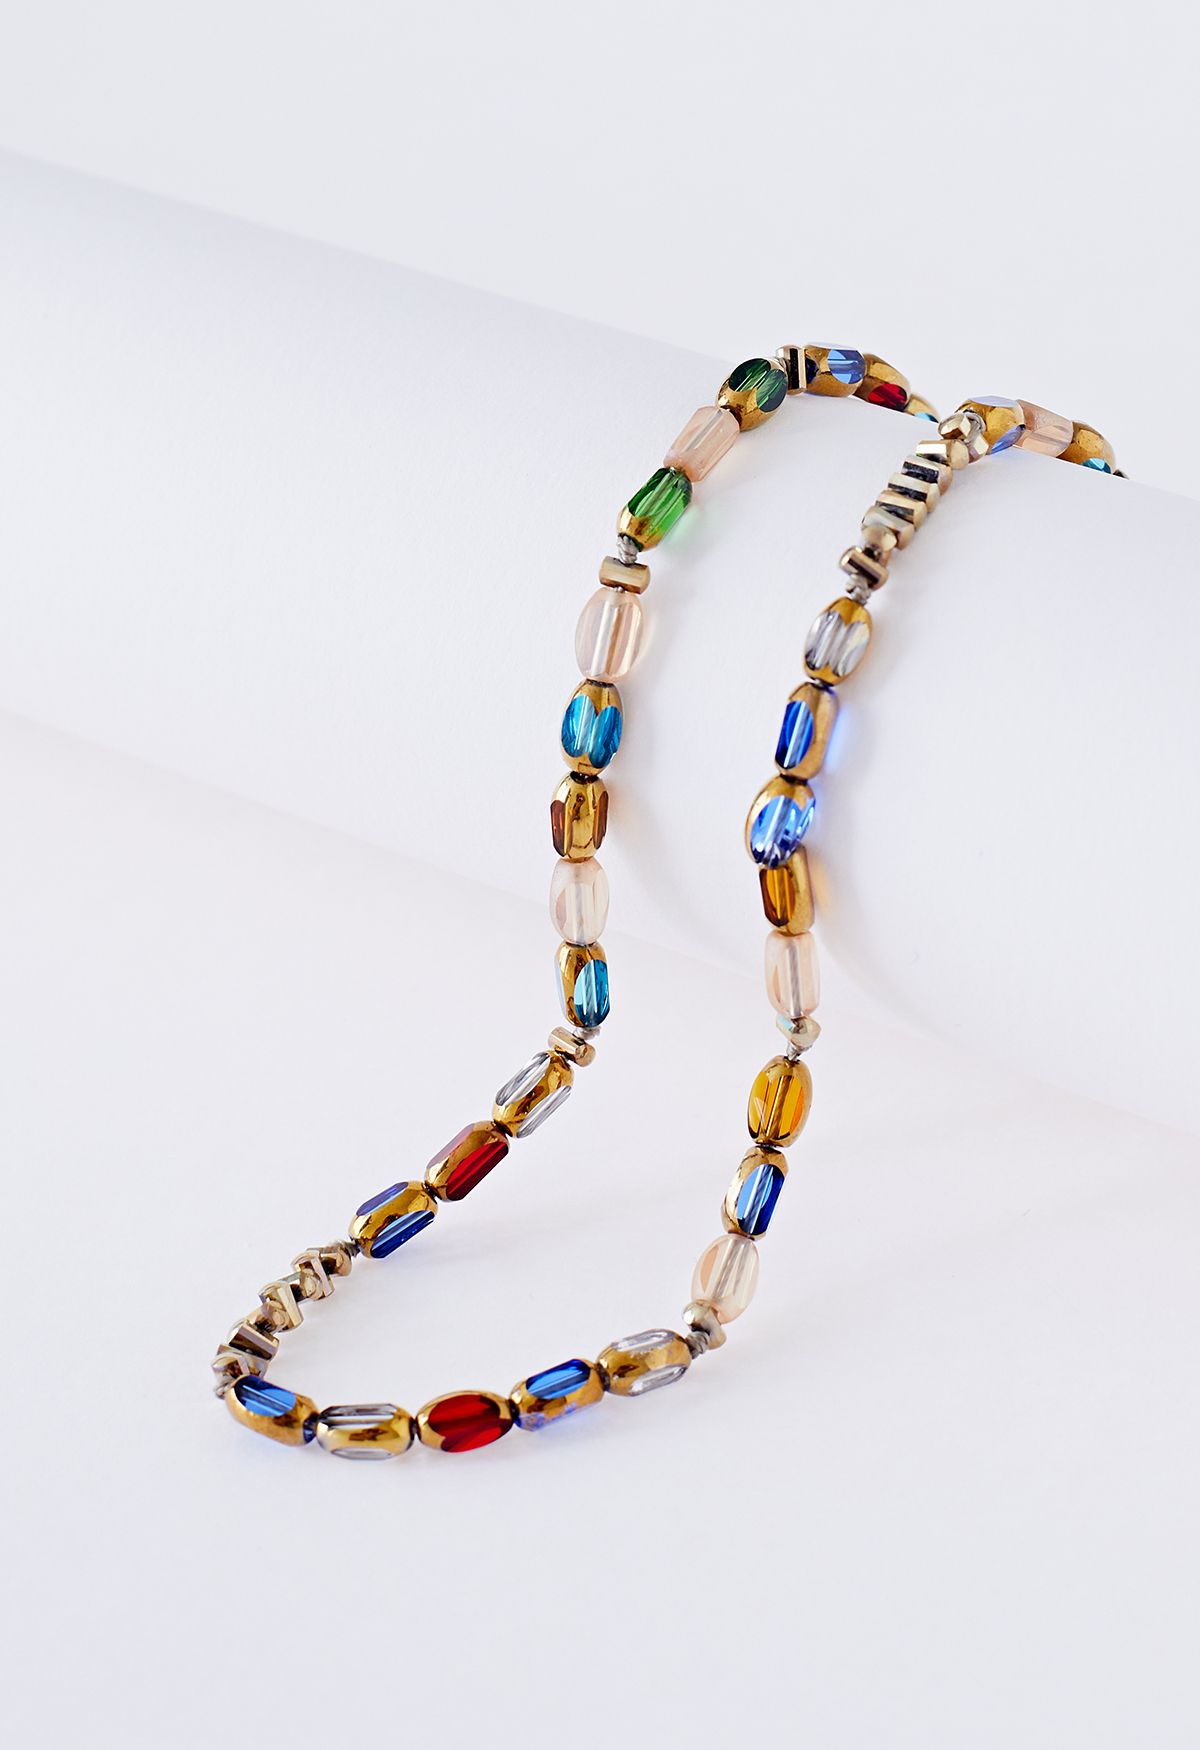 Vintage farbige Kristall Schlüsselbein Halskette